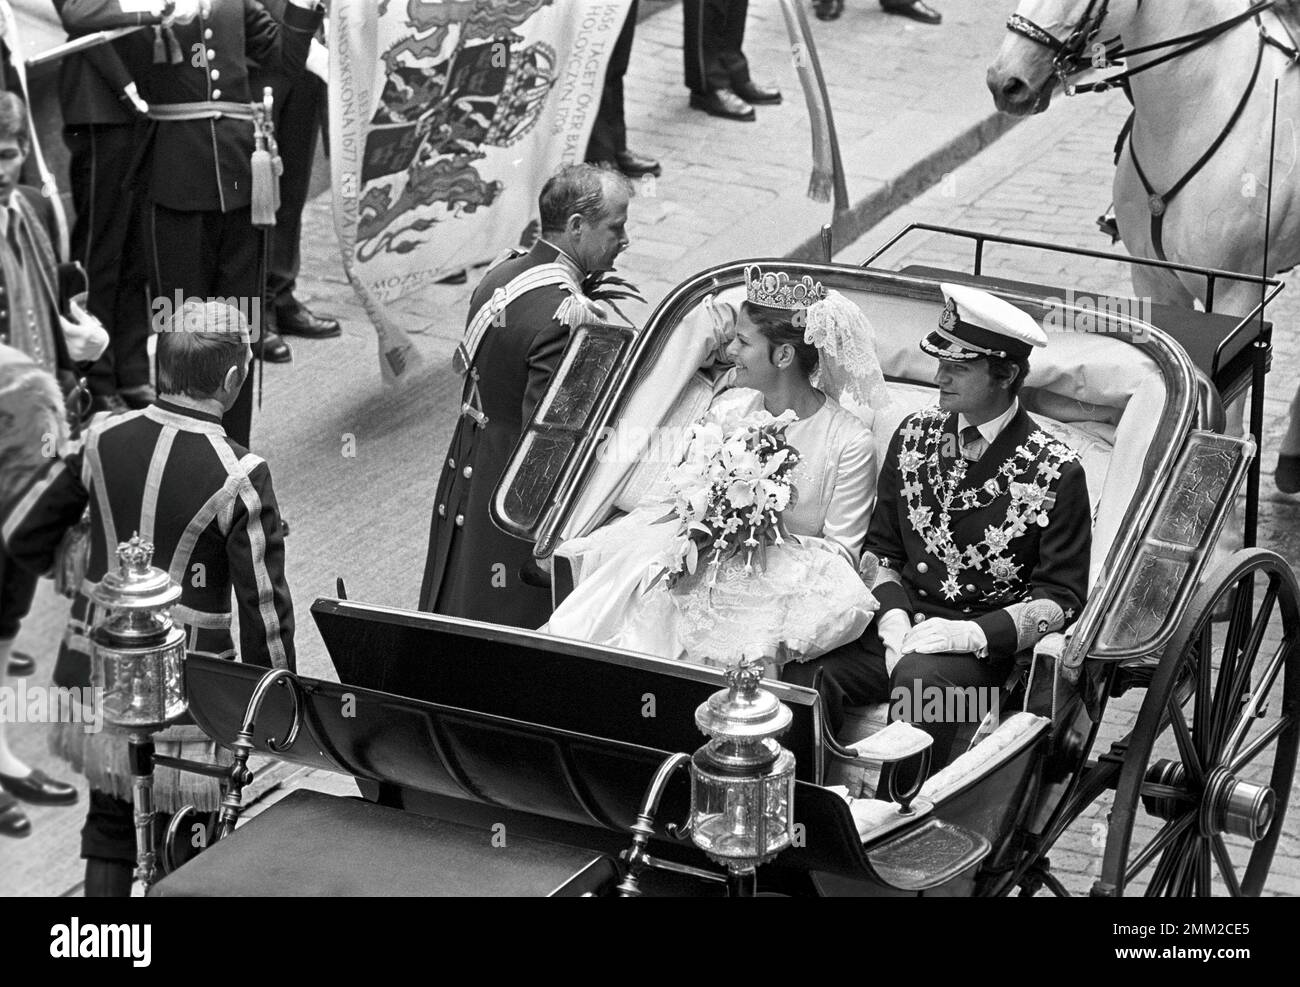 Matrimonio di Carlo XVI Gustaf e Silvia Sommerlath. Carl XVI Gustaf, re di Svezia. Nato il 30 aprile 1946. Il matrimonio 19 giugno 1976. La regina Silvia e il re Carl XVI Gustaf dopo la cerimonia nuziale a Storkyrkan a Stoccolma. rif BV7-5,6 Foto Stock